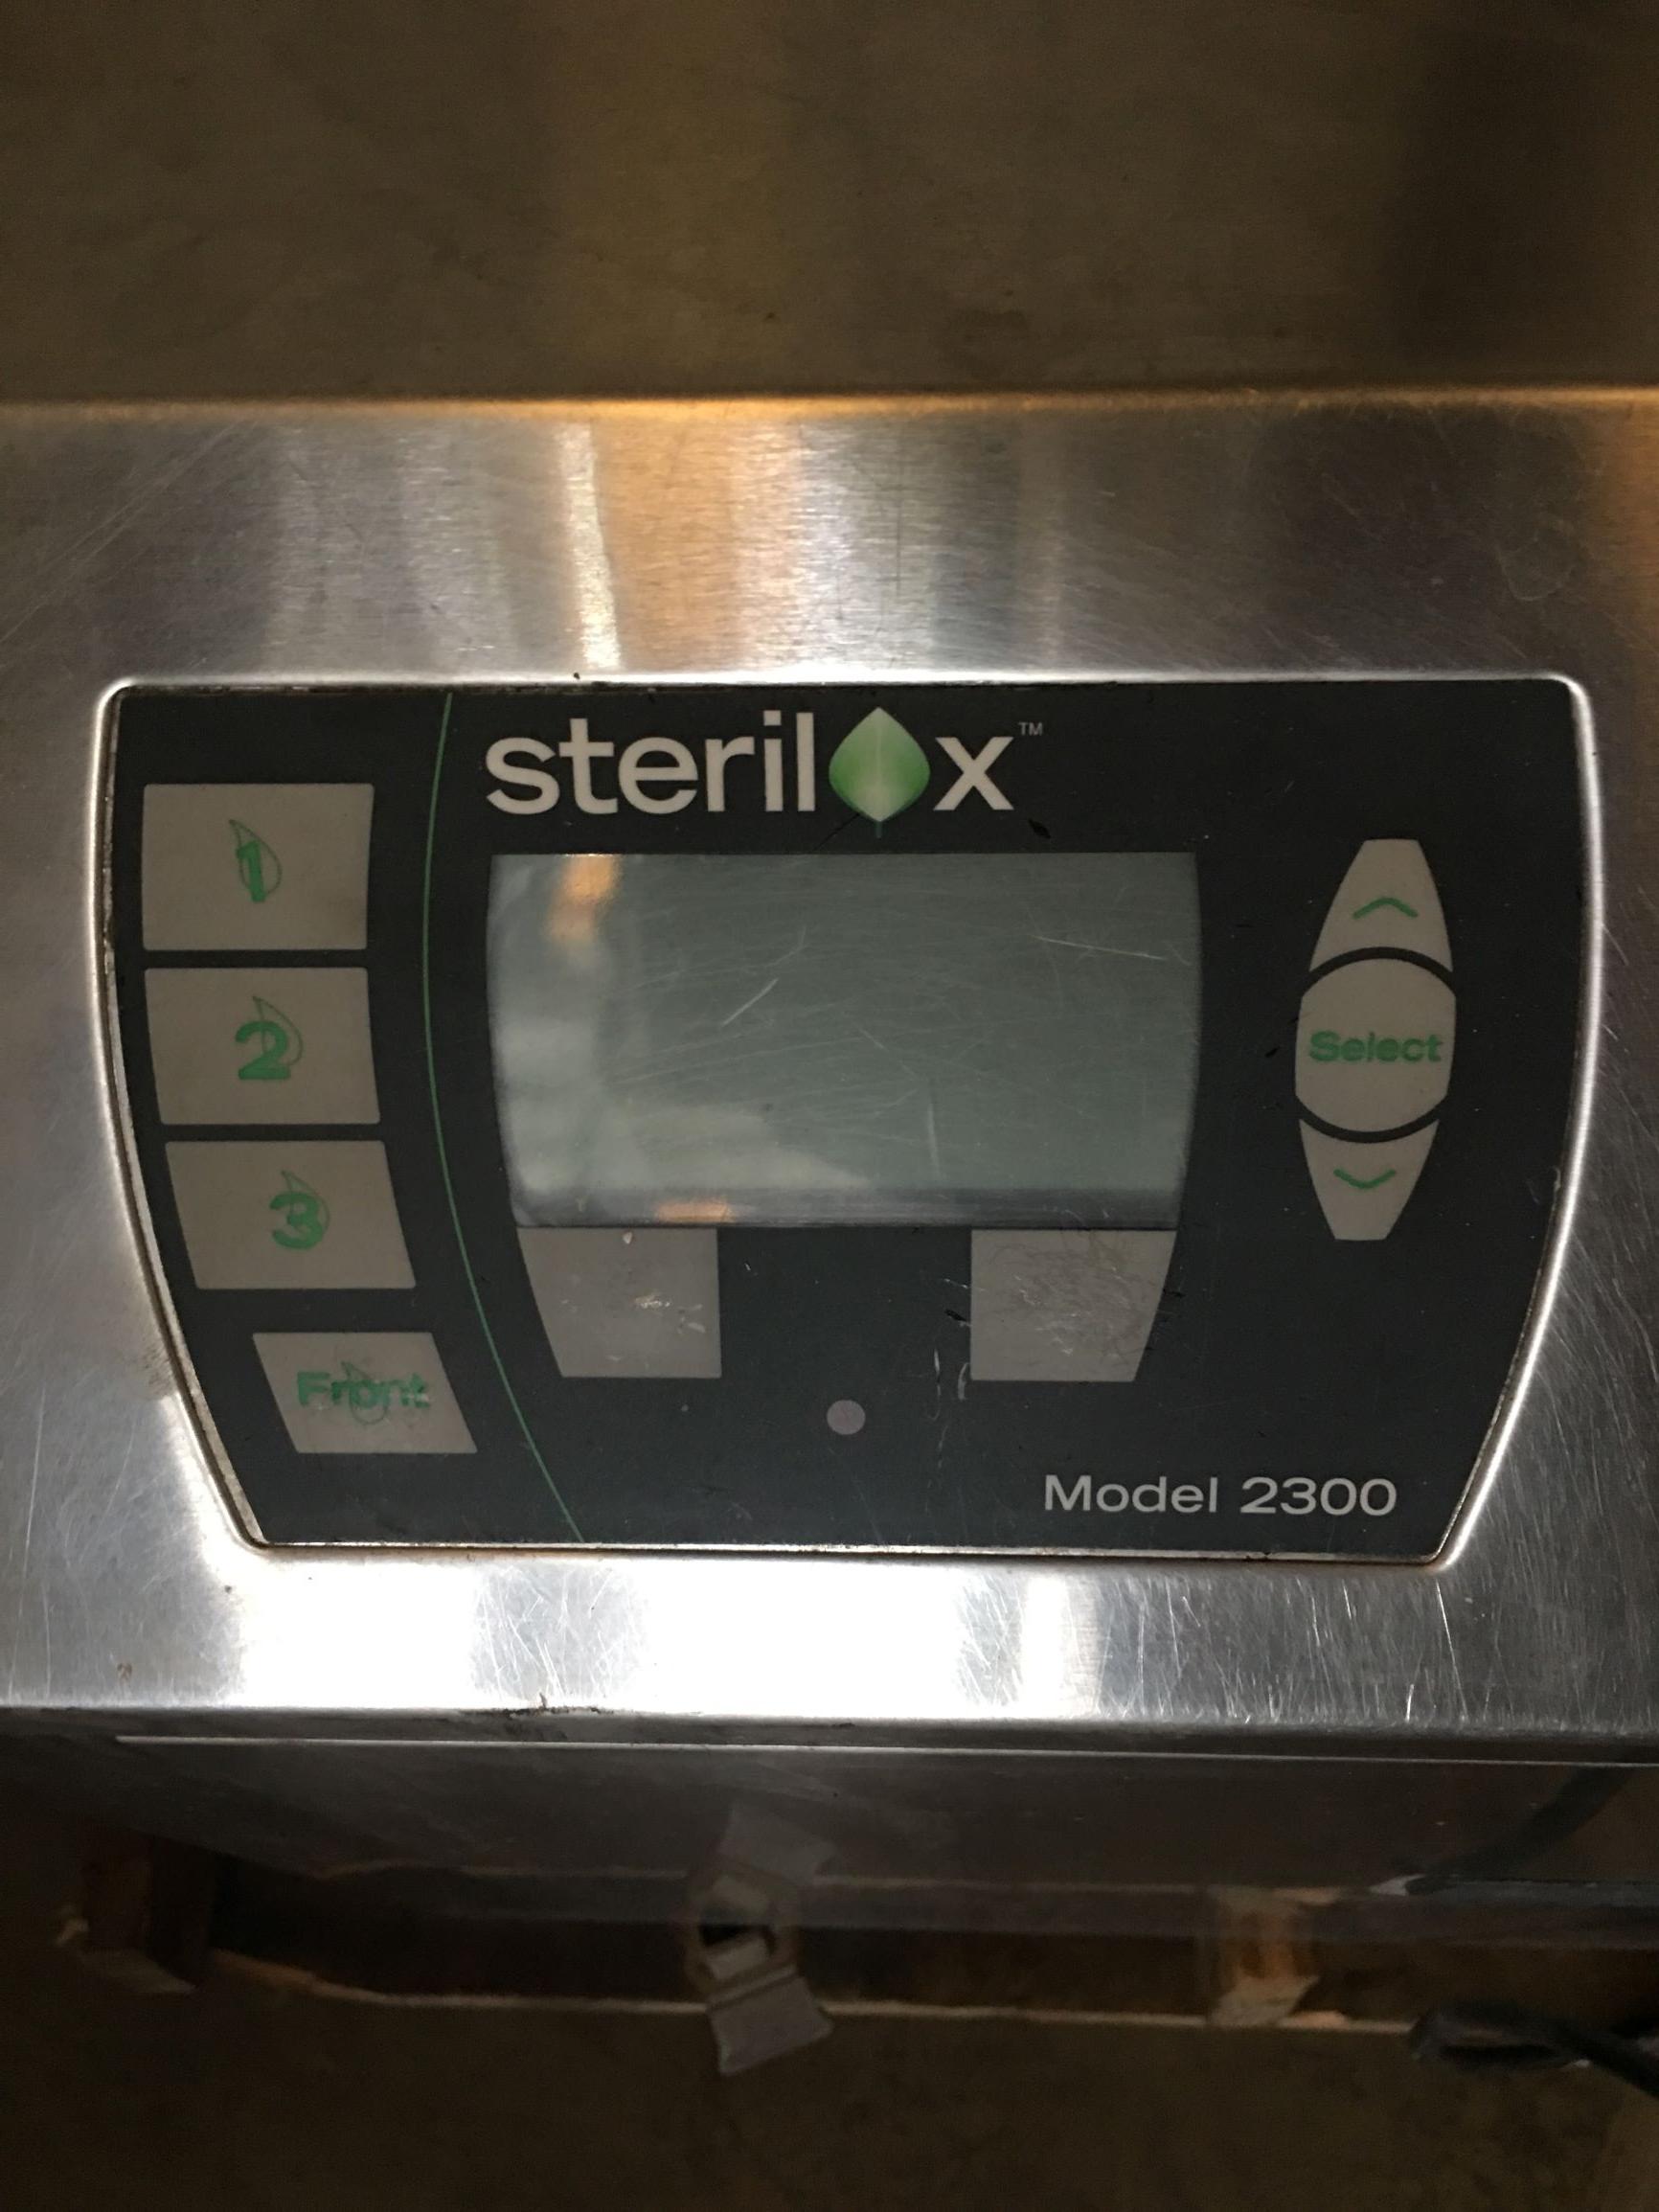 Sterilox Sanitizing System